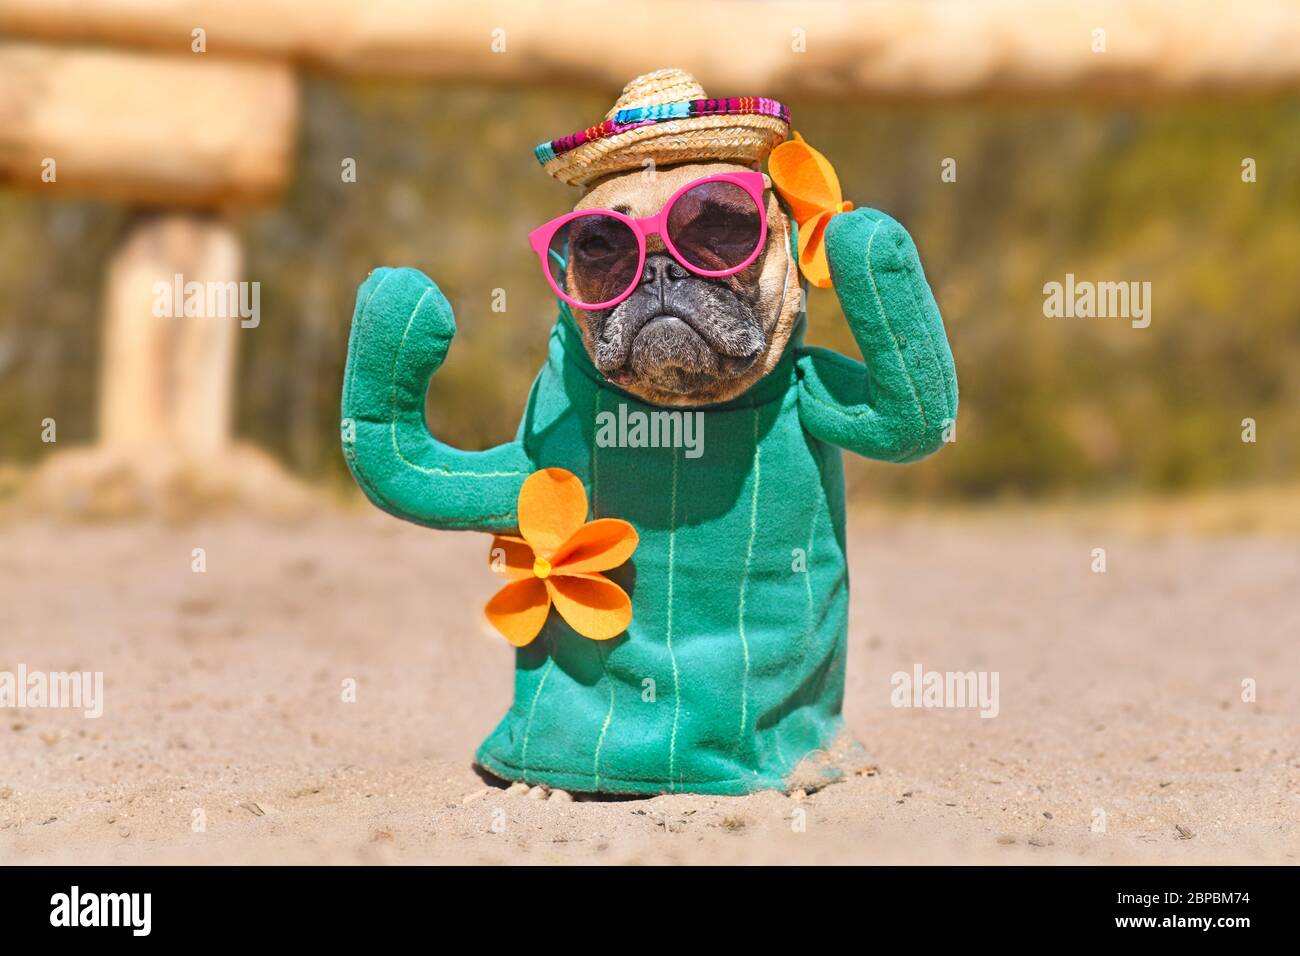 https://c8.alamy.com/compde/2bpbm74/lustige-franzosische-bulldogge-hund-verkleidet-mit-kaktus-kostum-mit-gefalschten-armen-und-orange-fwers-tragen-sommer-traw-hut-und-rosa-sonnenbrille-auf-sand-stehen-2bpbm74.jpg